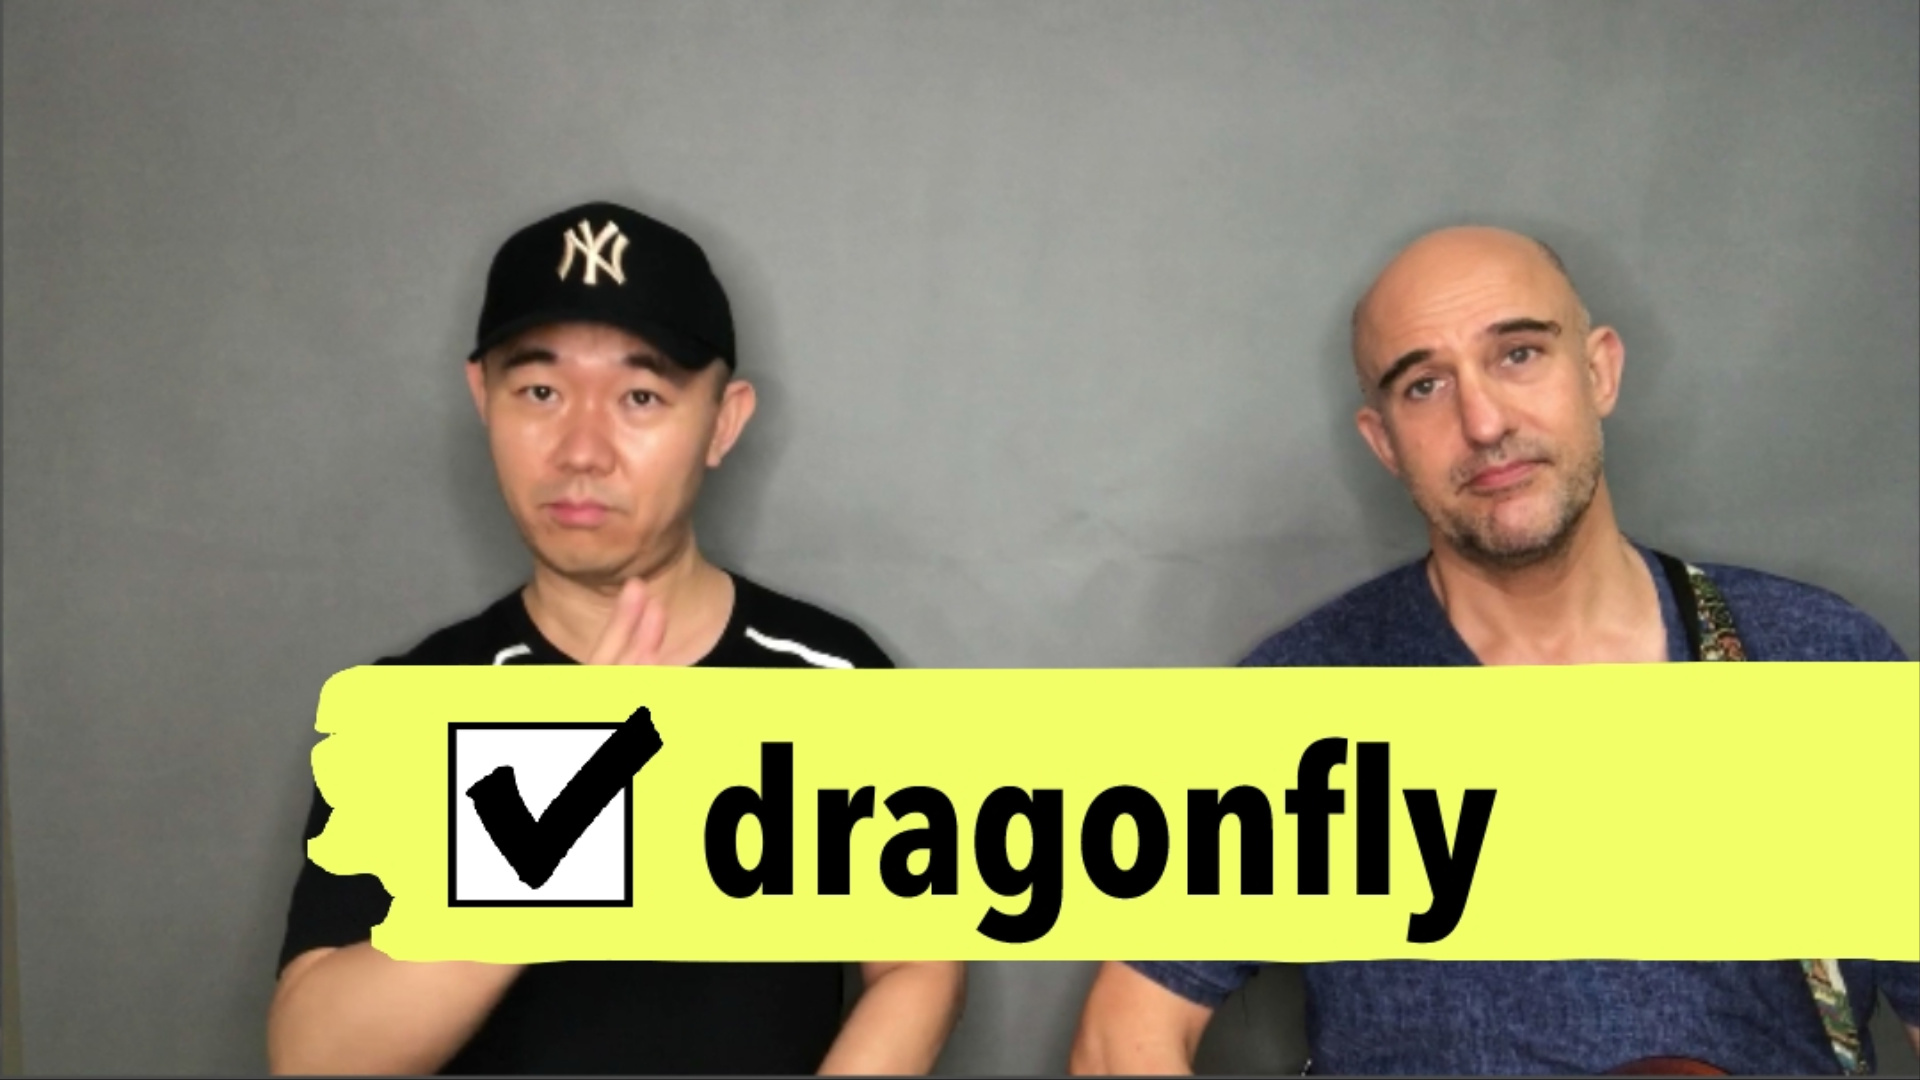 学习英语的视频 - 英语学习的视频 dragonfly